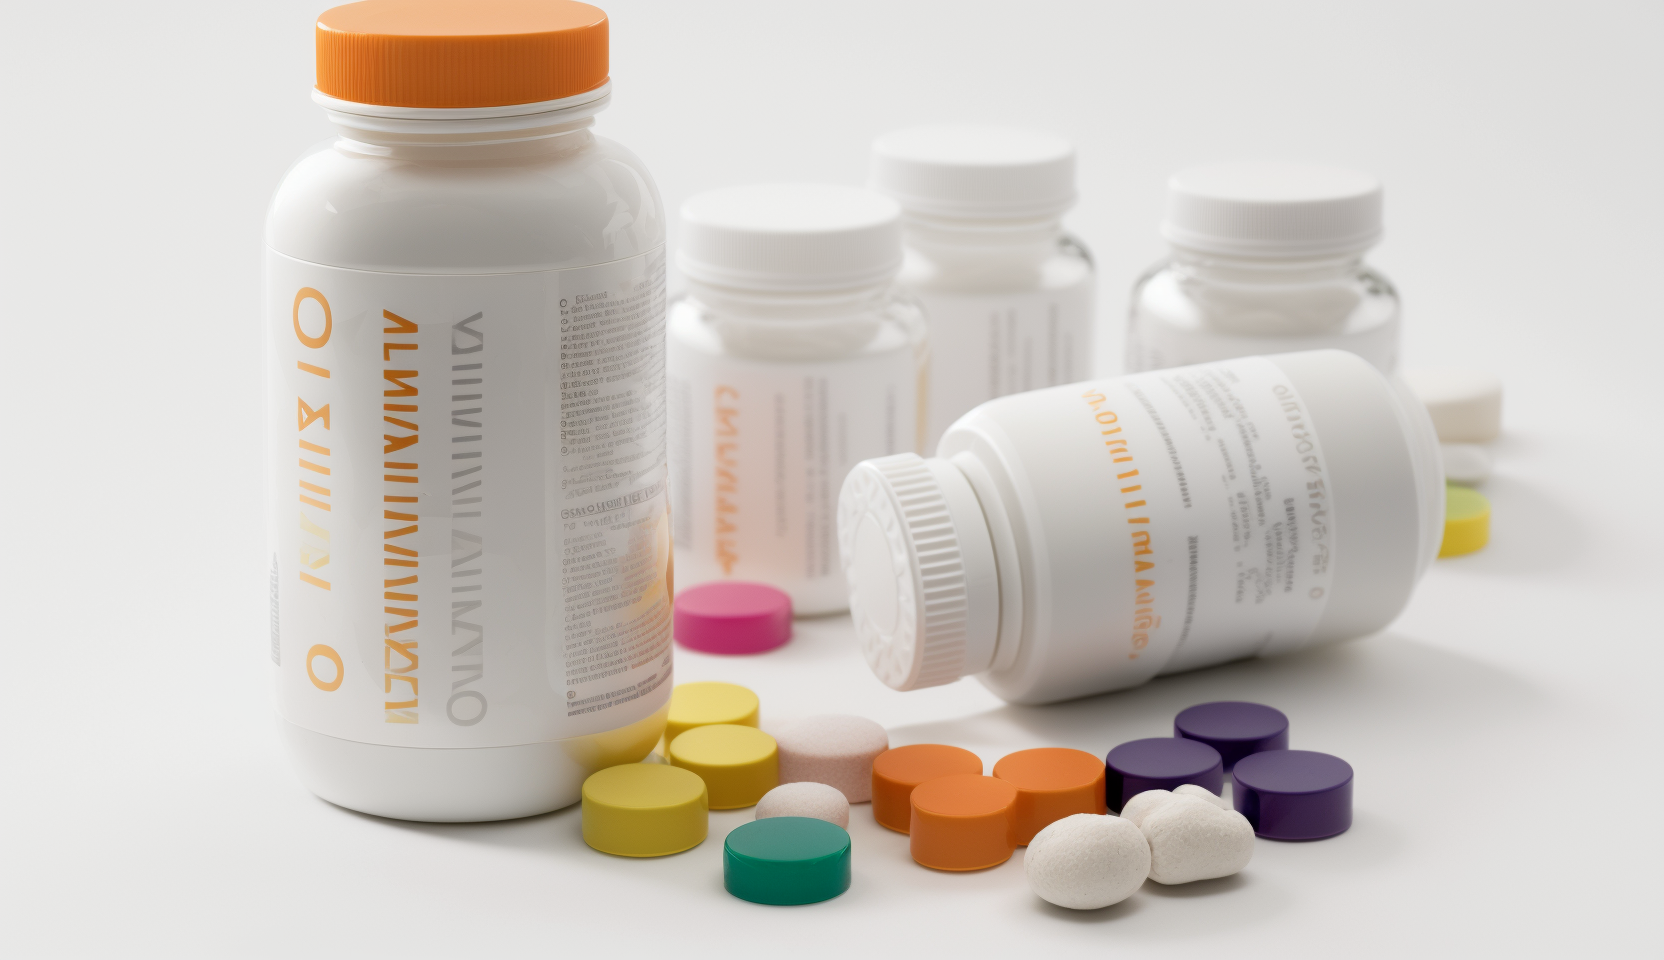 An assortment of thyroid supplements